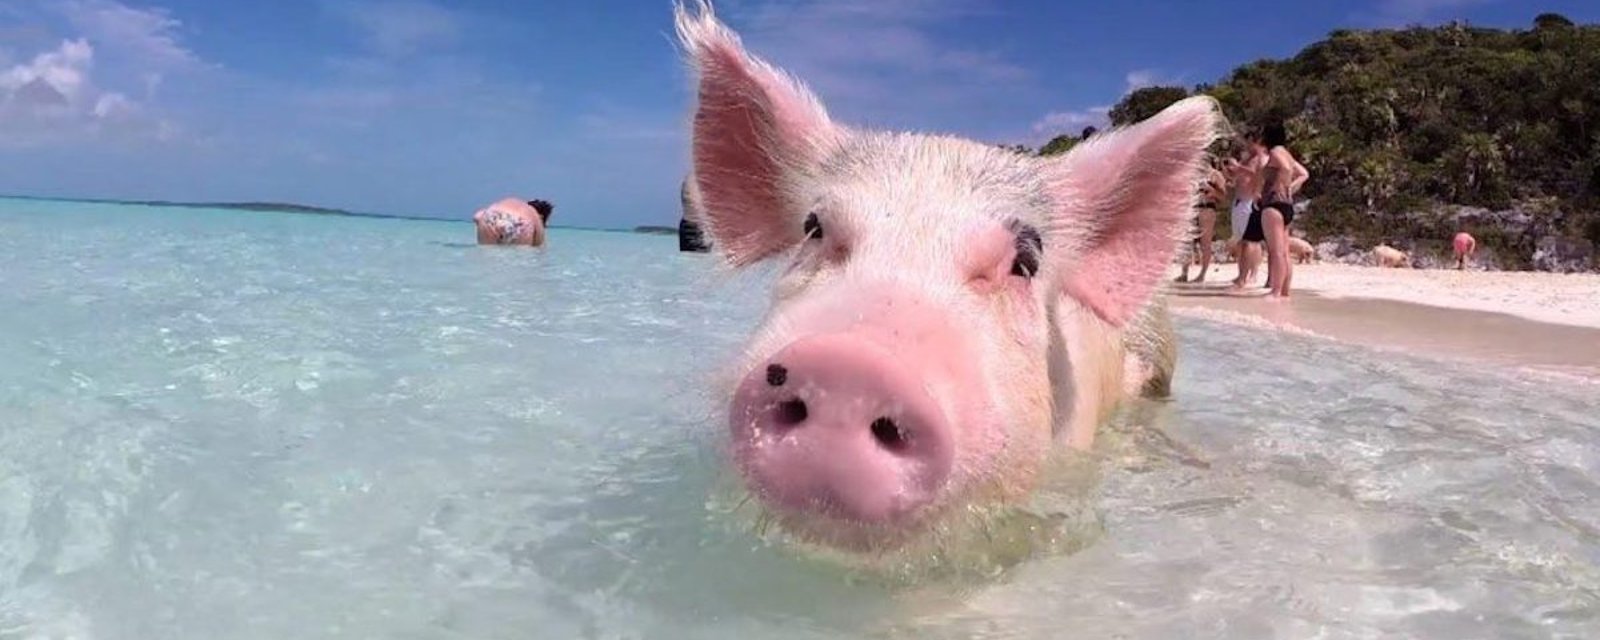 Nager dans les eaux claires des Bahamas… avec des cochons!